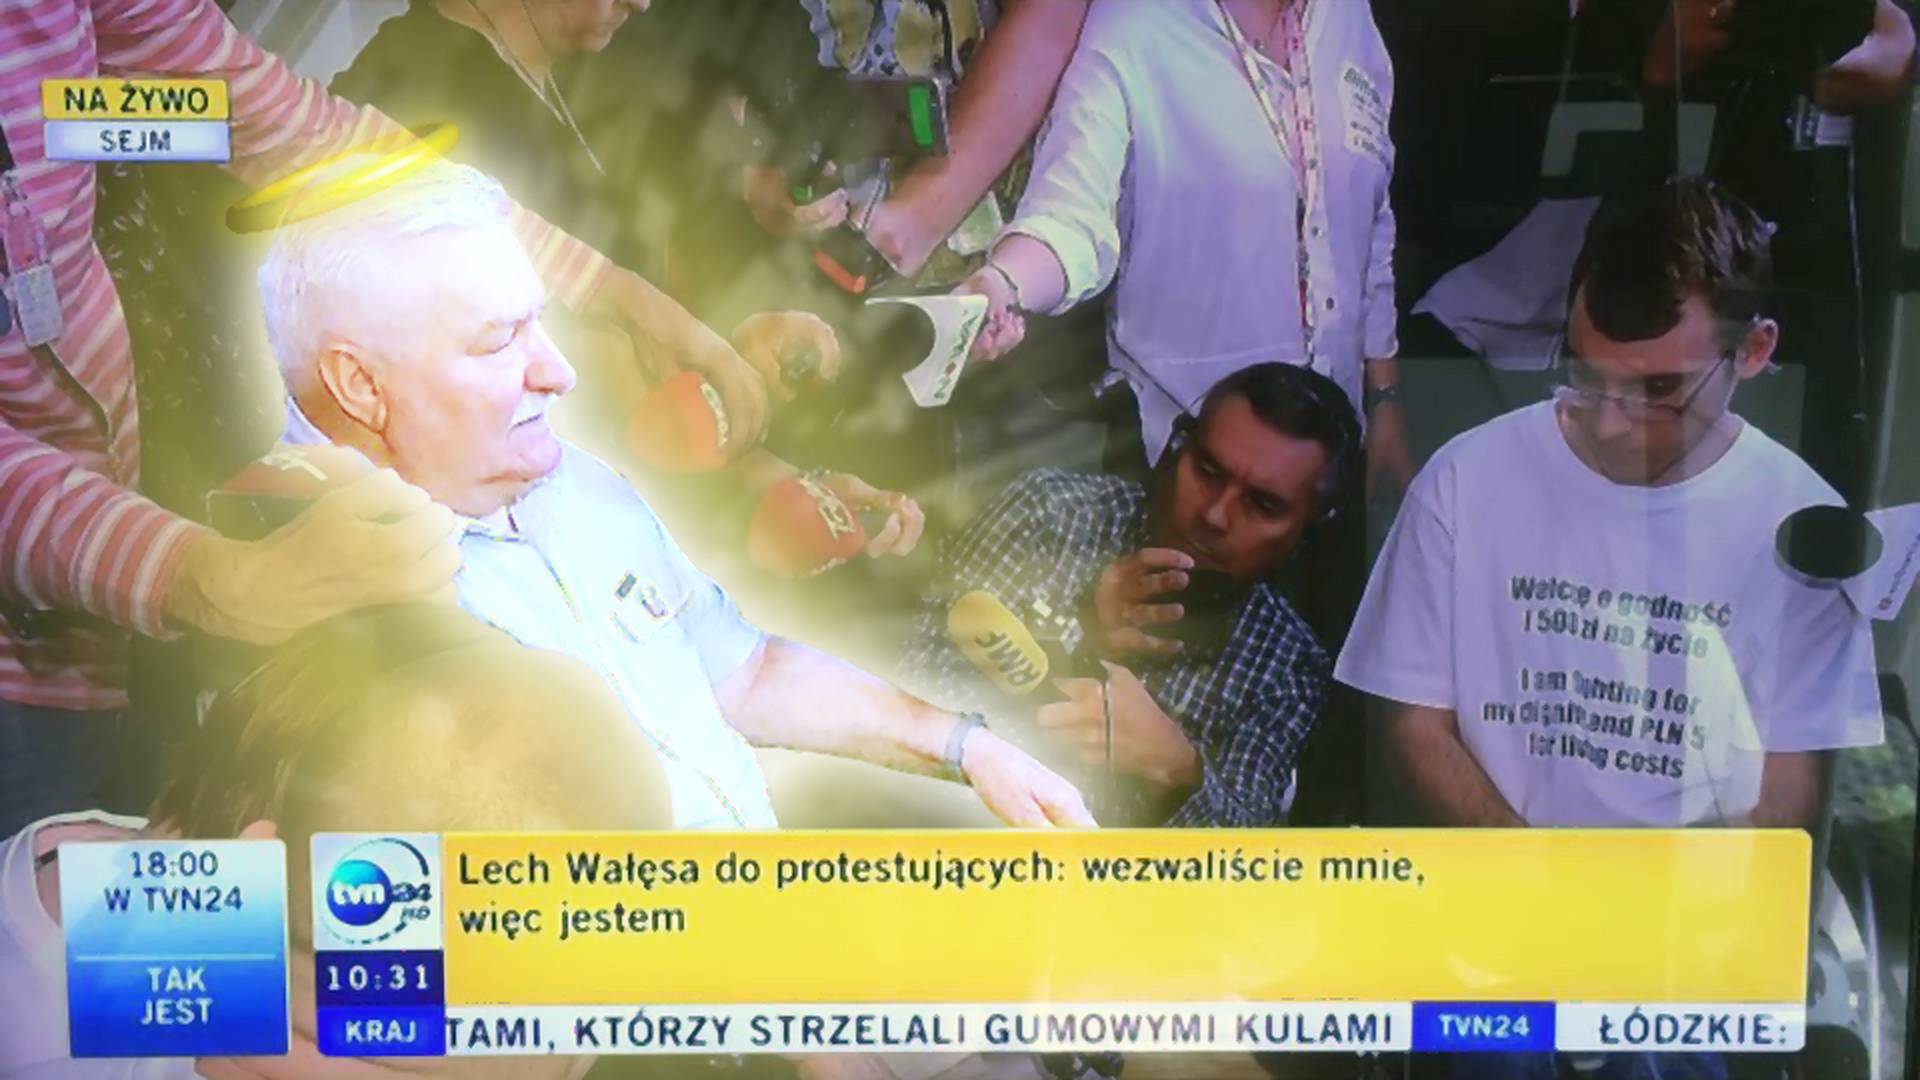 Chciałbym, żeby Lech Wałęsa zniknął z internetu. Na zawsze i dla swojego dobra